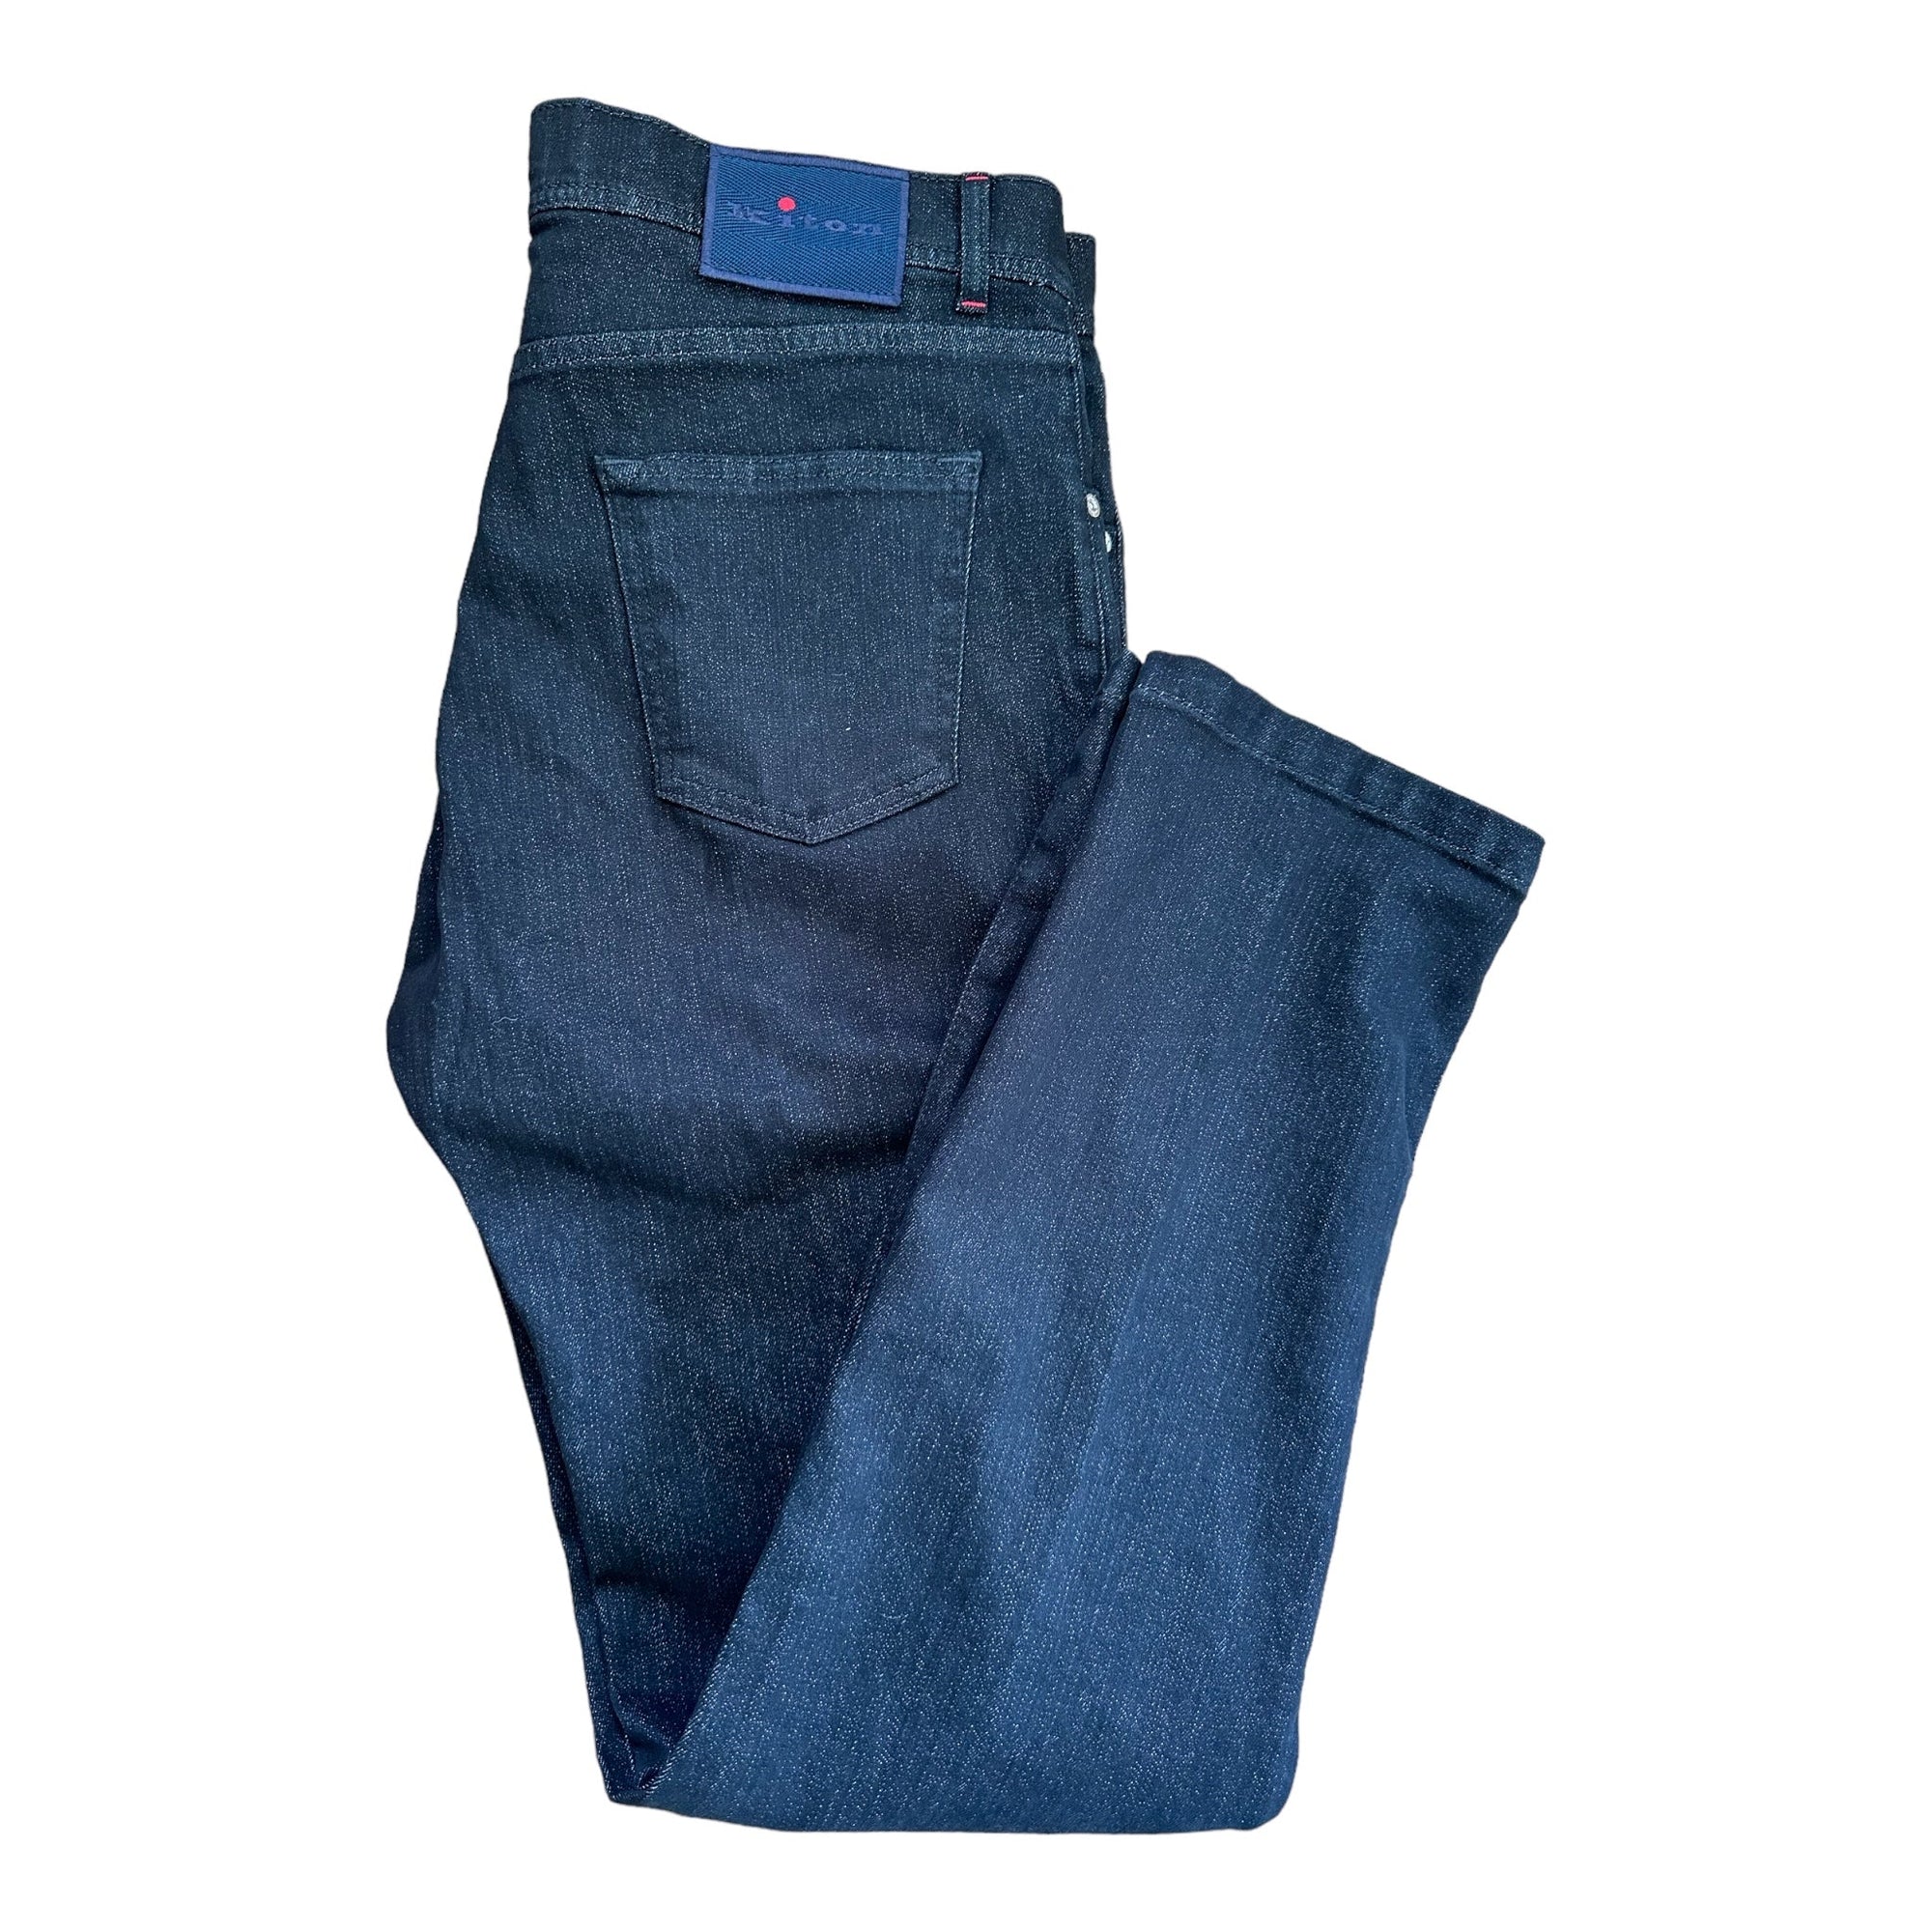 Kiton Jeans schwarz - 24/7 Clothing